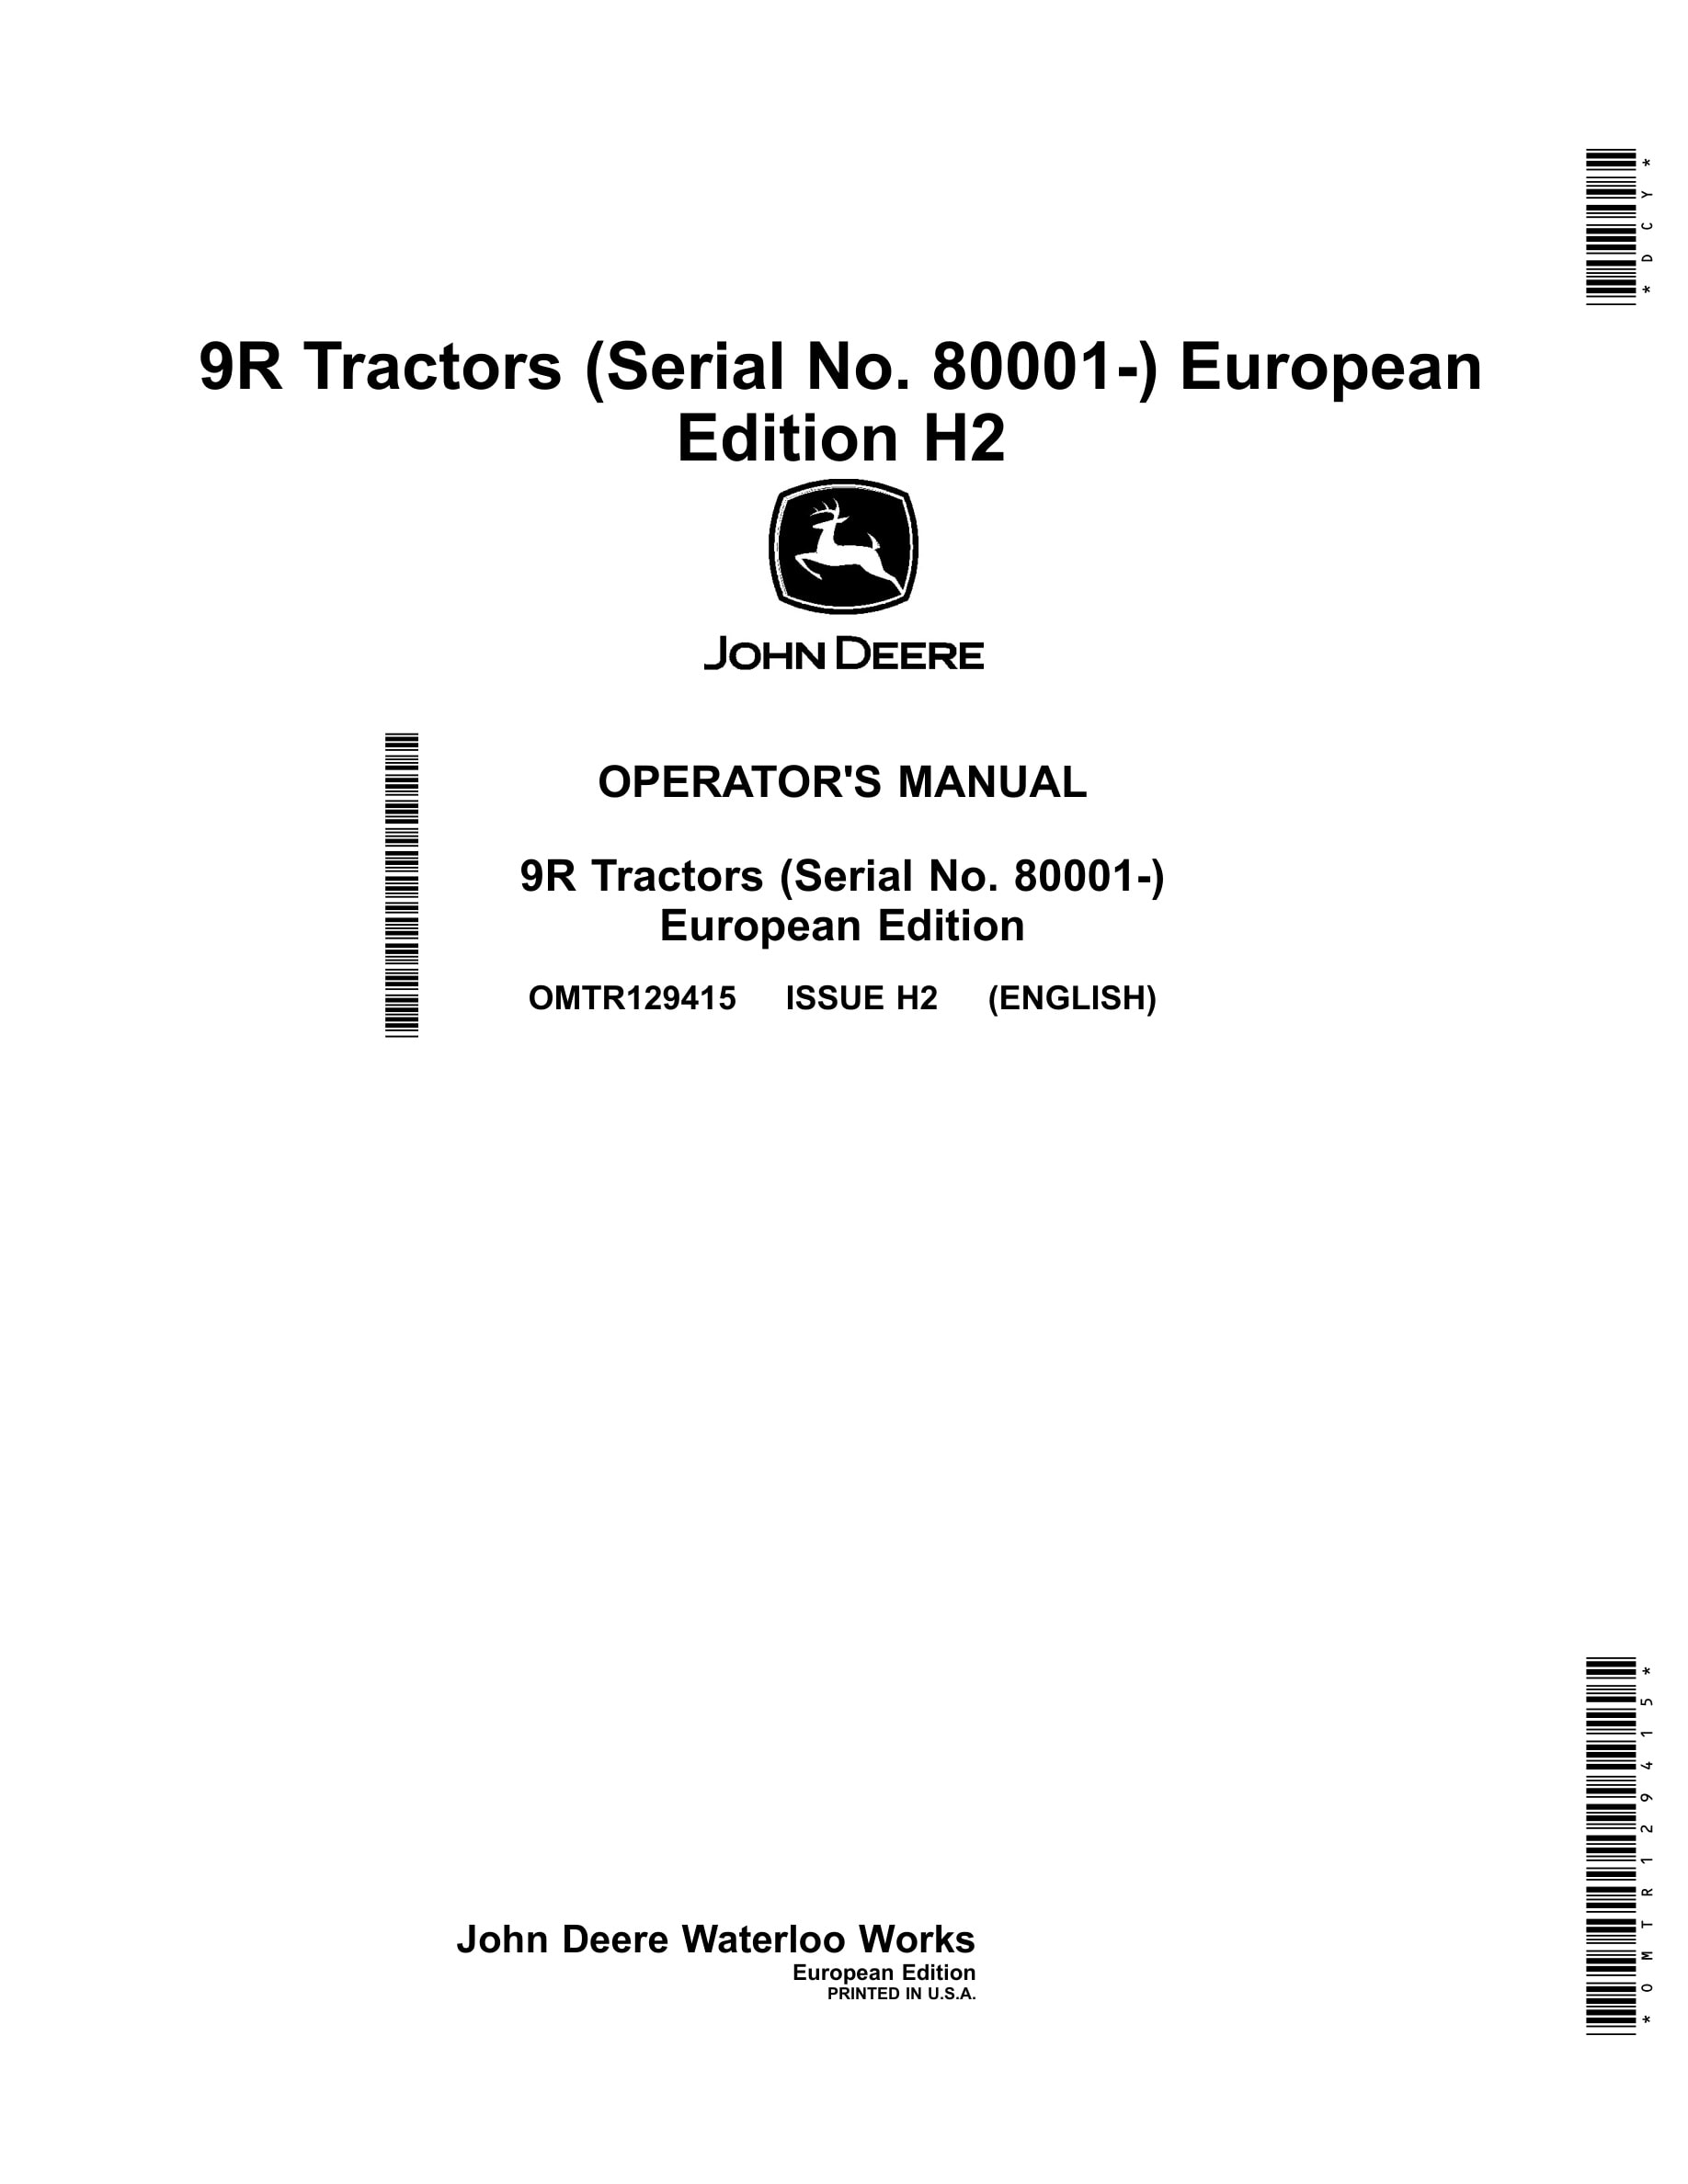 John Deere 9r Tractors Operator Manuals OMTR129415-1